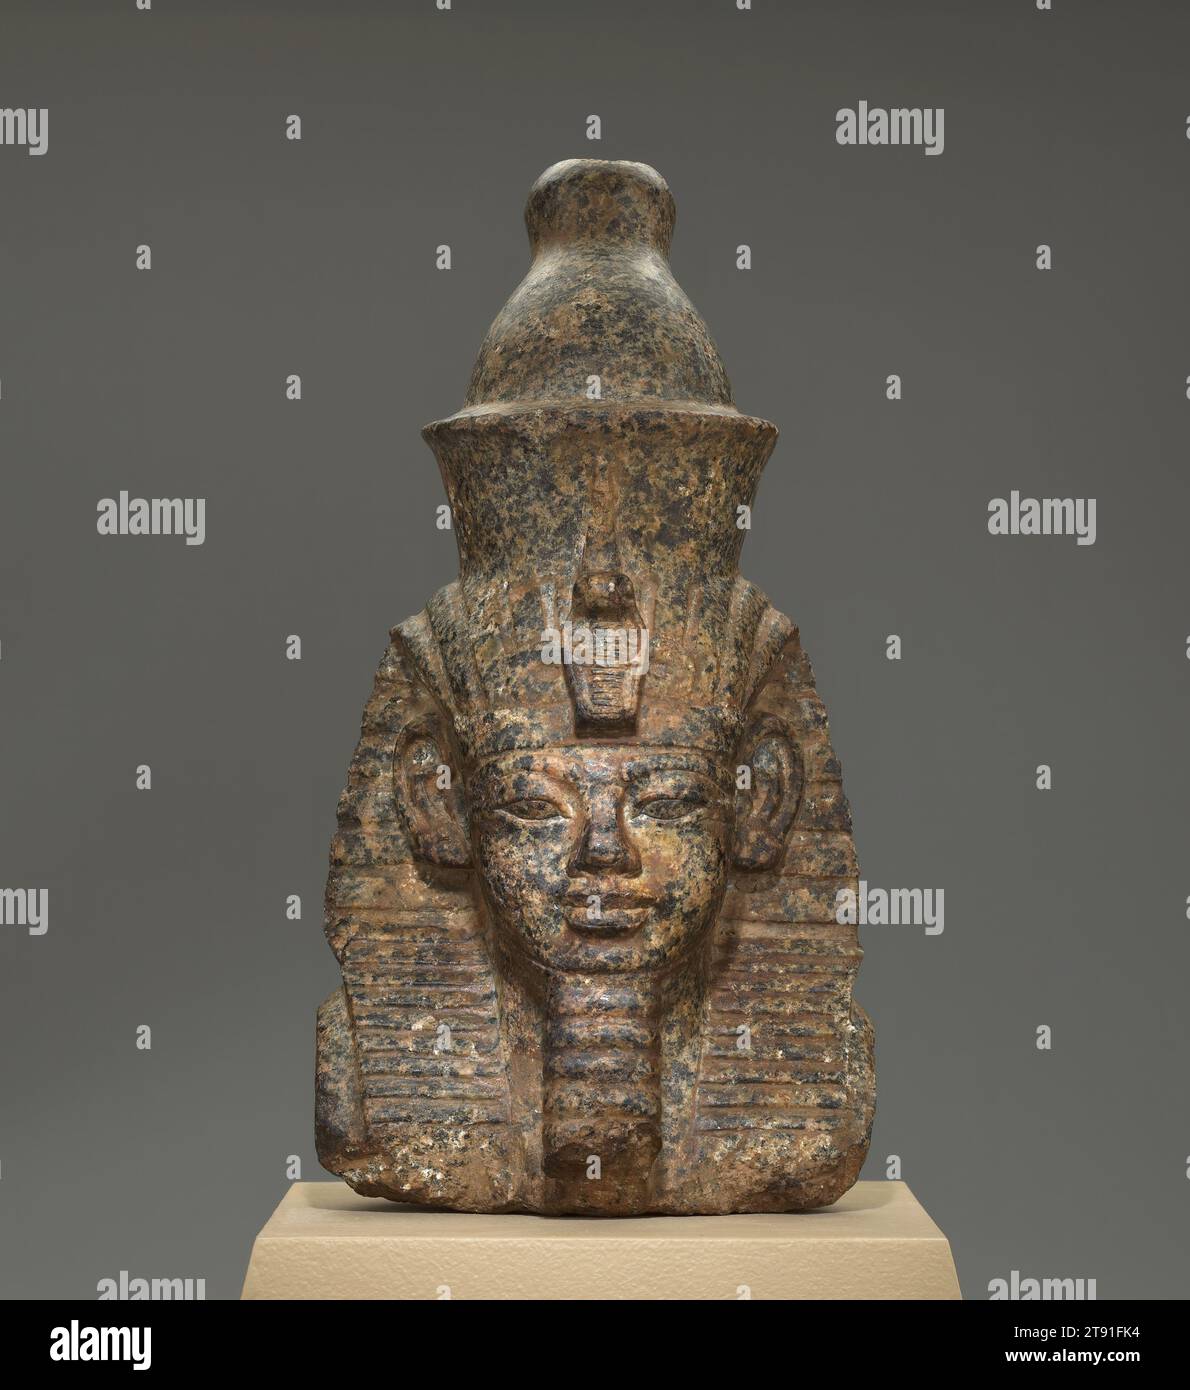 Porträt des Pharao Amenhotep III, 1391-1353 v. Chr., 10 3/8 x 6 x 5 Zoll (26,35 x 15,24 x 12,7 cm), Granodiorit, Ägypten, 15.-14. Jahrhundert v. Chr., „Amenhotep der prächtige“ ist das Epithet des Pharao Amenhotep III. Und es sagt alles. In den 1300er Jahren v. Chr. regierte er ein Reich, das sich von Nordsyrien bis zum Sudan erstreckte, ein Gebiet, das ungefähr so groß war wie Alaska, Texas und Wisconsin zusammen. Seine 38-jährige Herrschaft war eine Zeit des politischen, wirtschaftlichen und kulturellen Wohlstands, und er beauftragte zahlreiche geschnitzte Porträts von sich, die in der Höhe von 60 Fuß bis ein paar Zentimeter variierten. Stockfoto